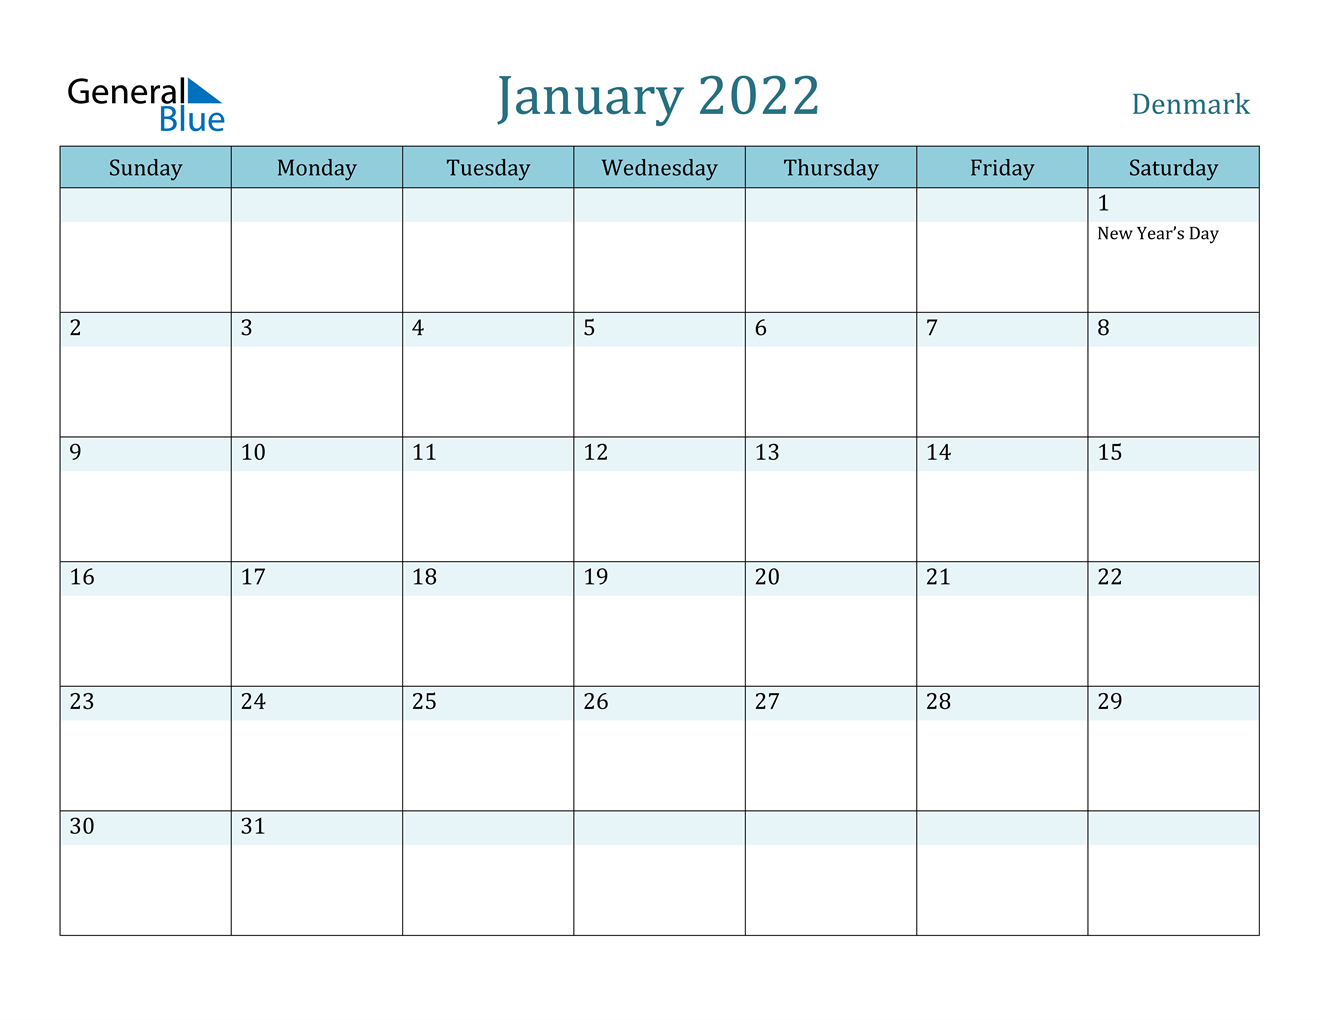 January 2022 Calendar - Denmark  A Calendar For 2022